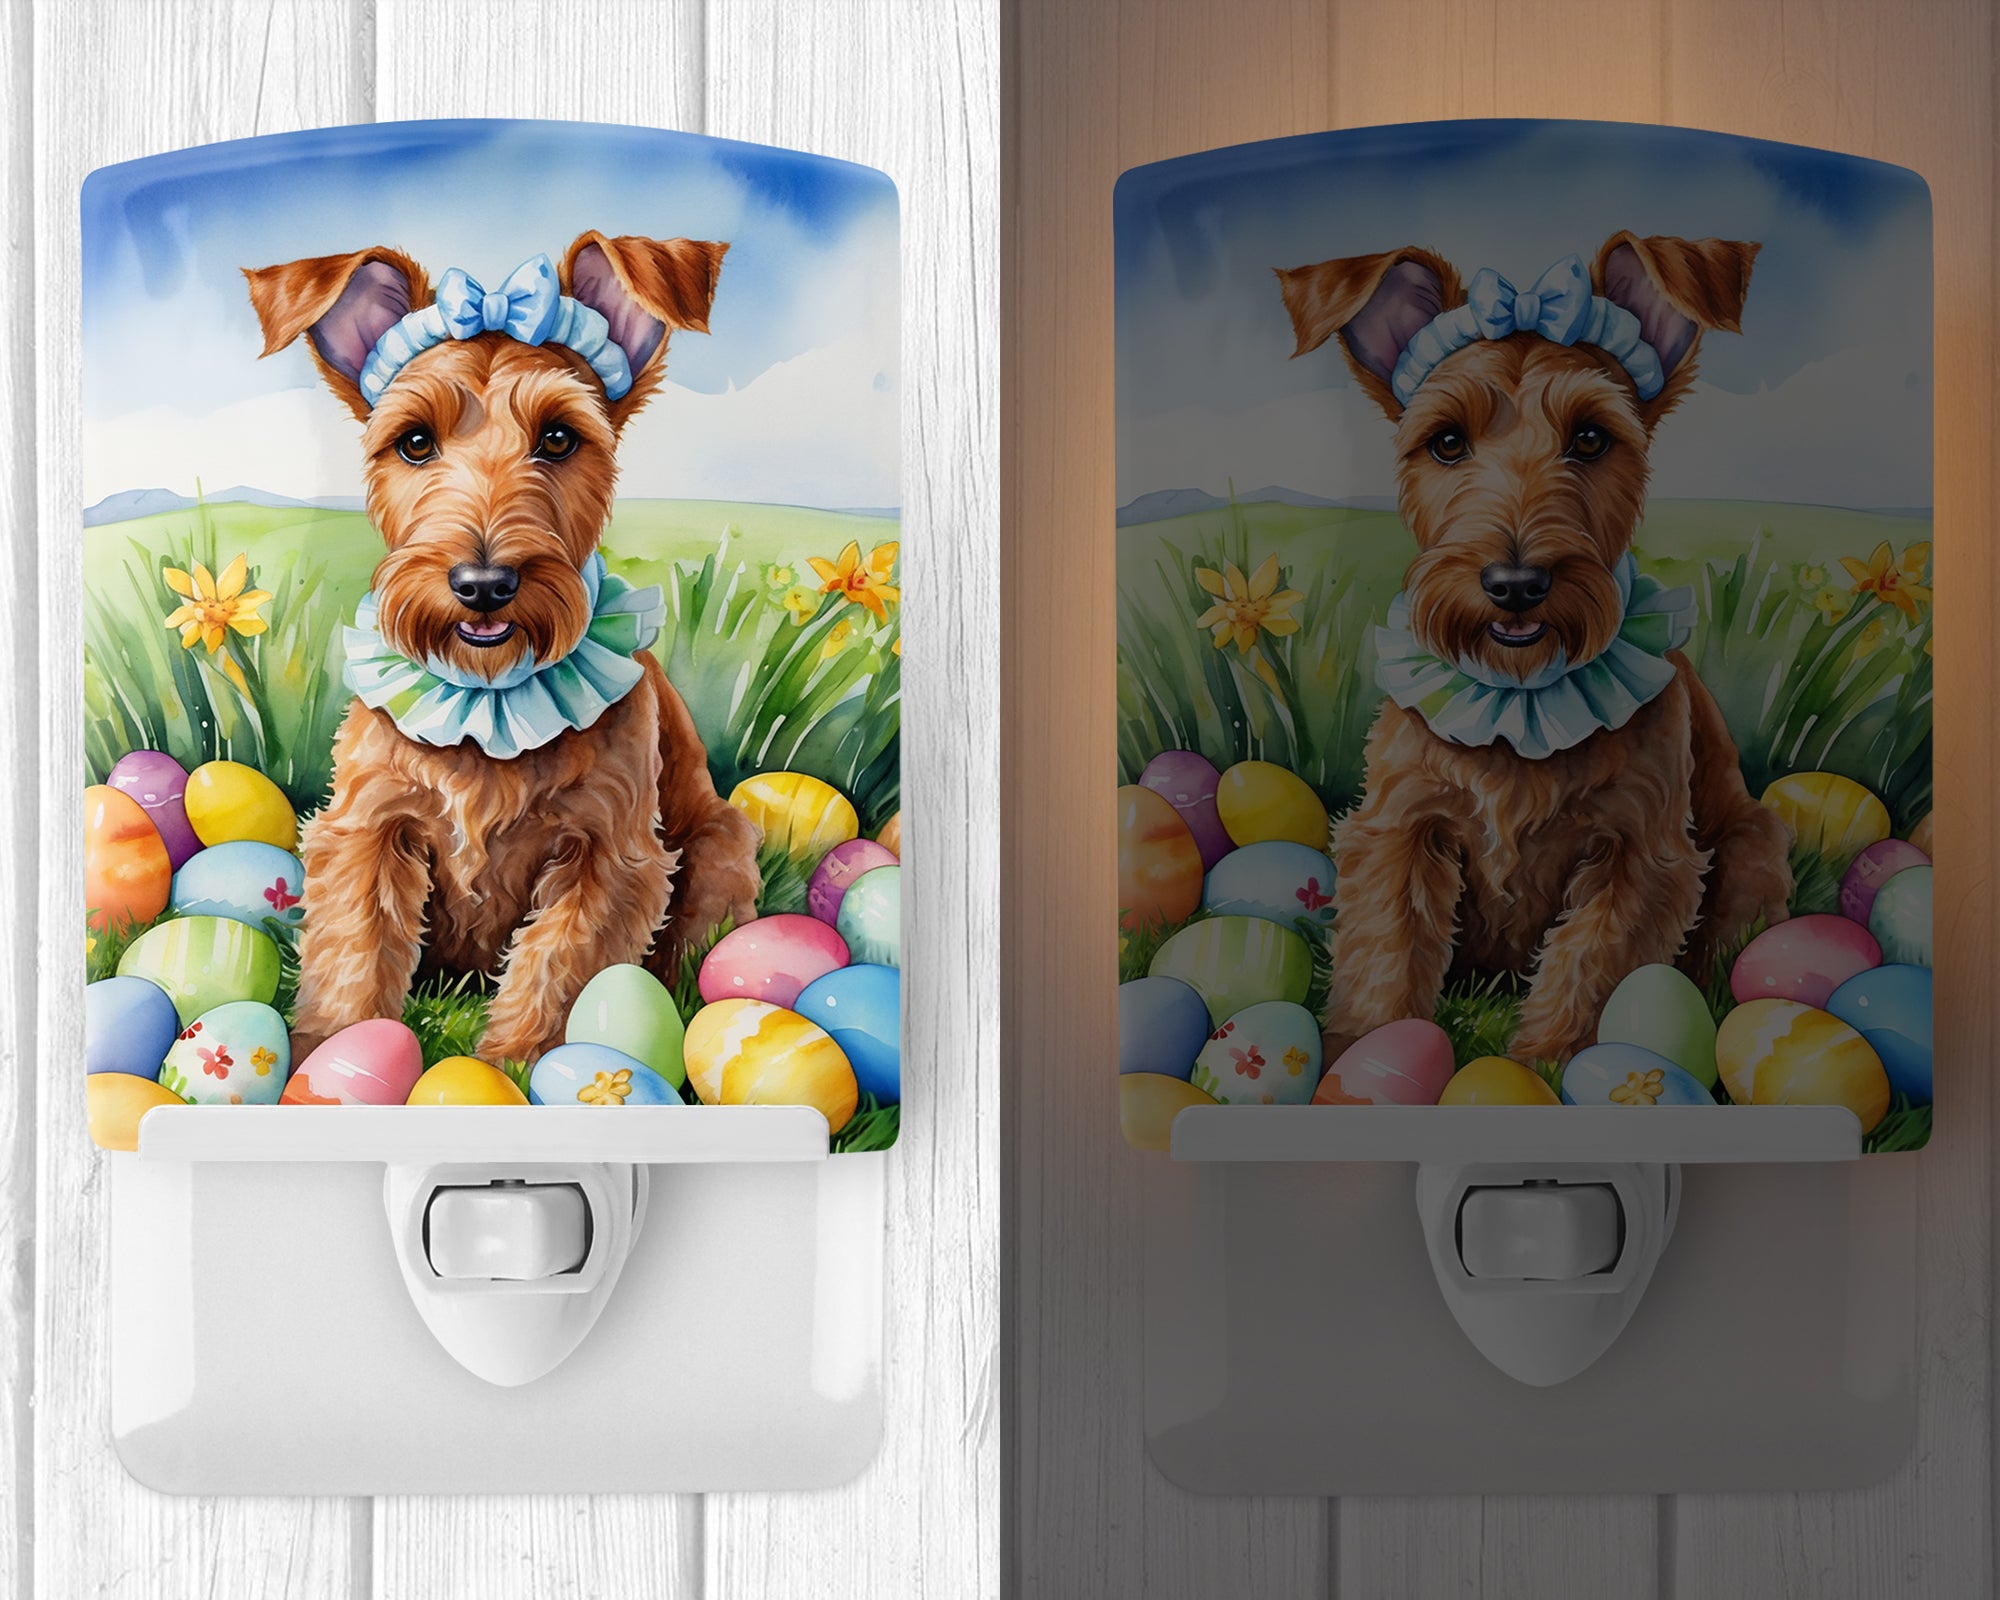 Irish Terrier Easter Egg Hunt Ceramic Night Light